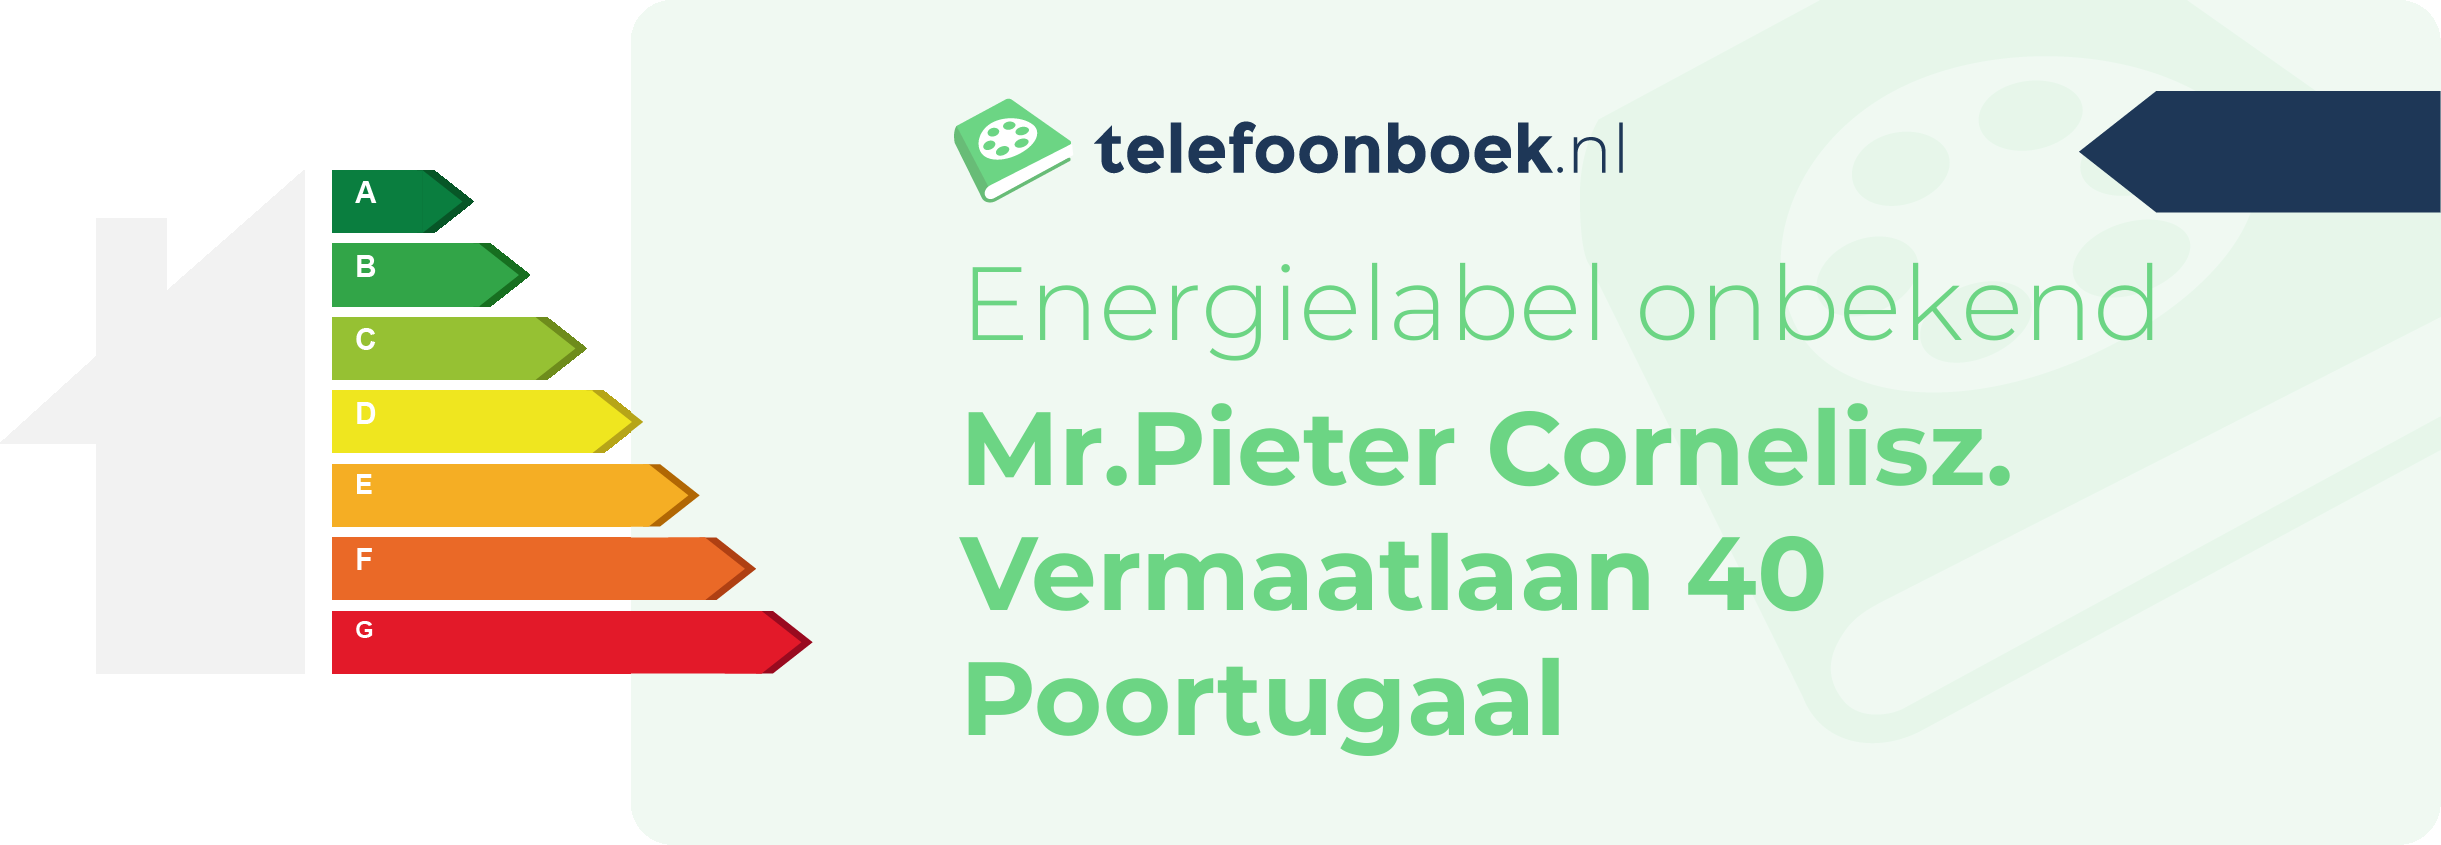 Energielabel Mr.Pieter Cornelisz. Vermaatlaan 40 Poortugaal